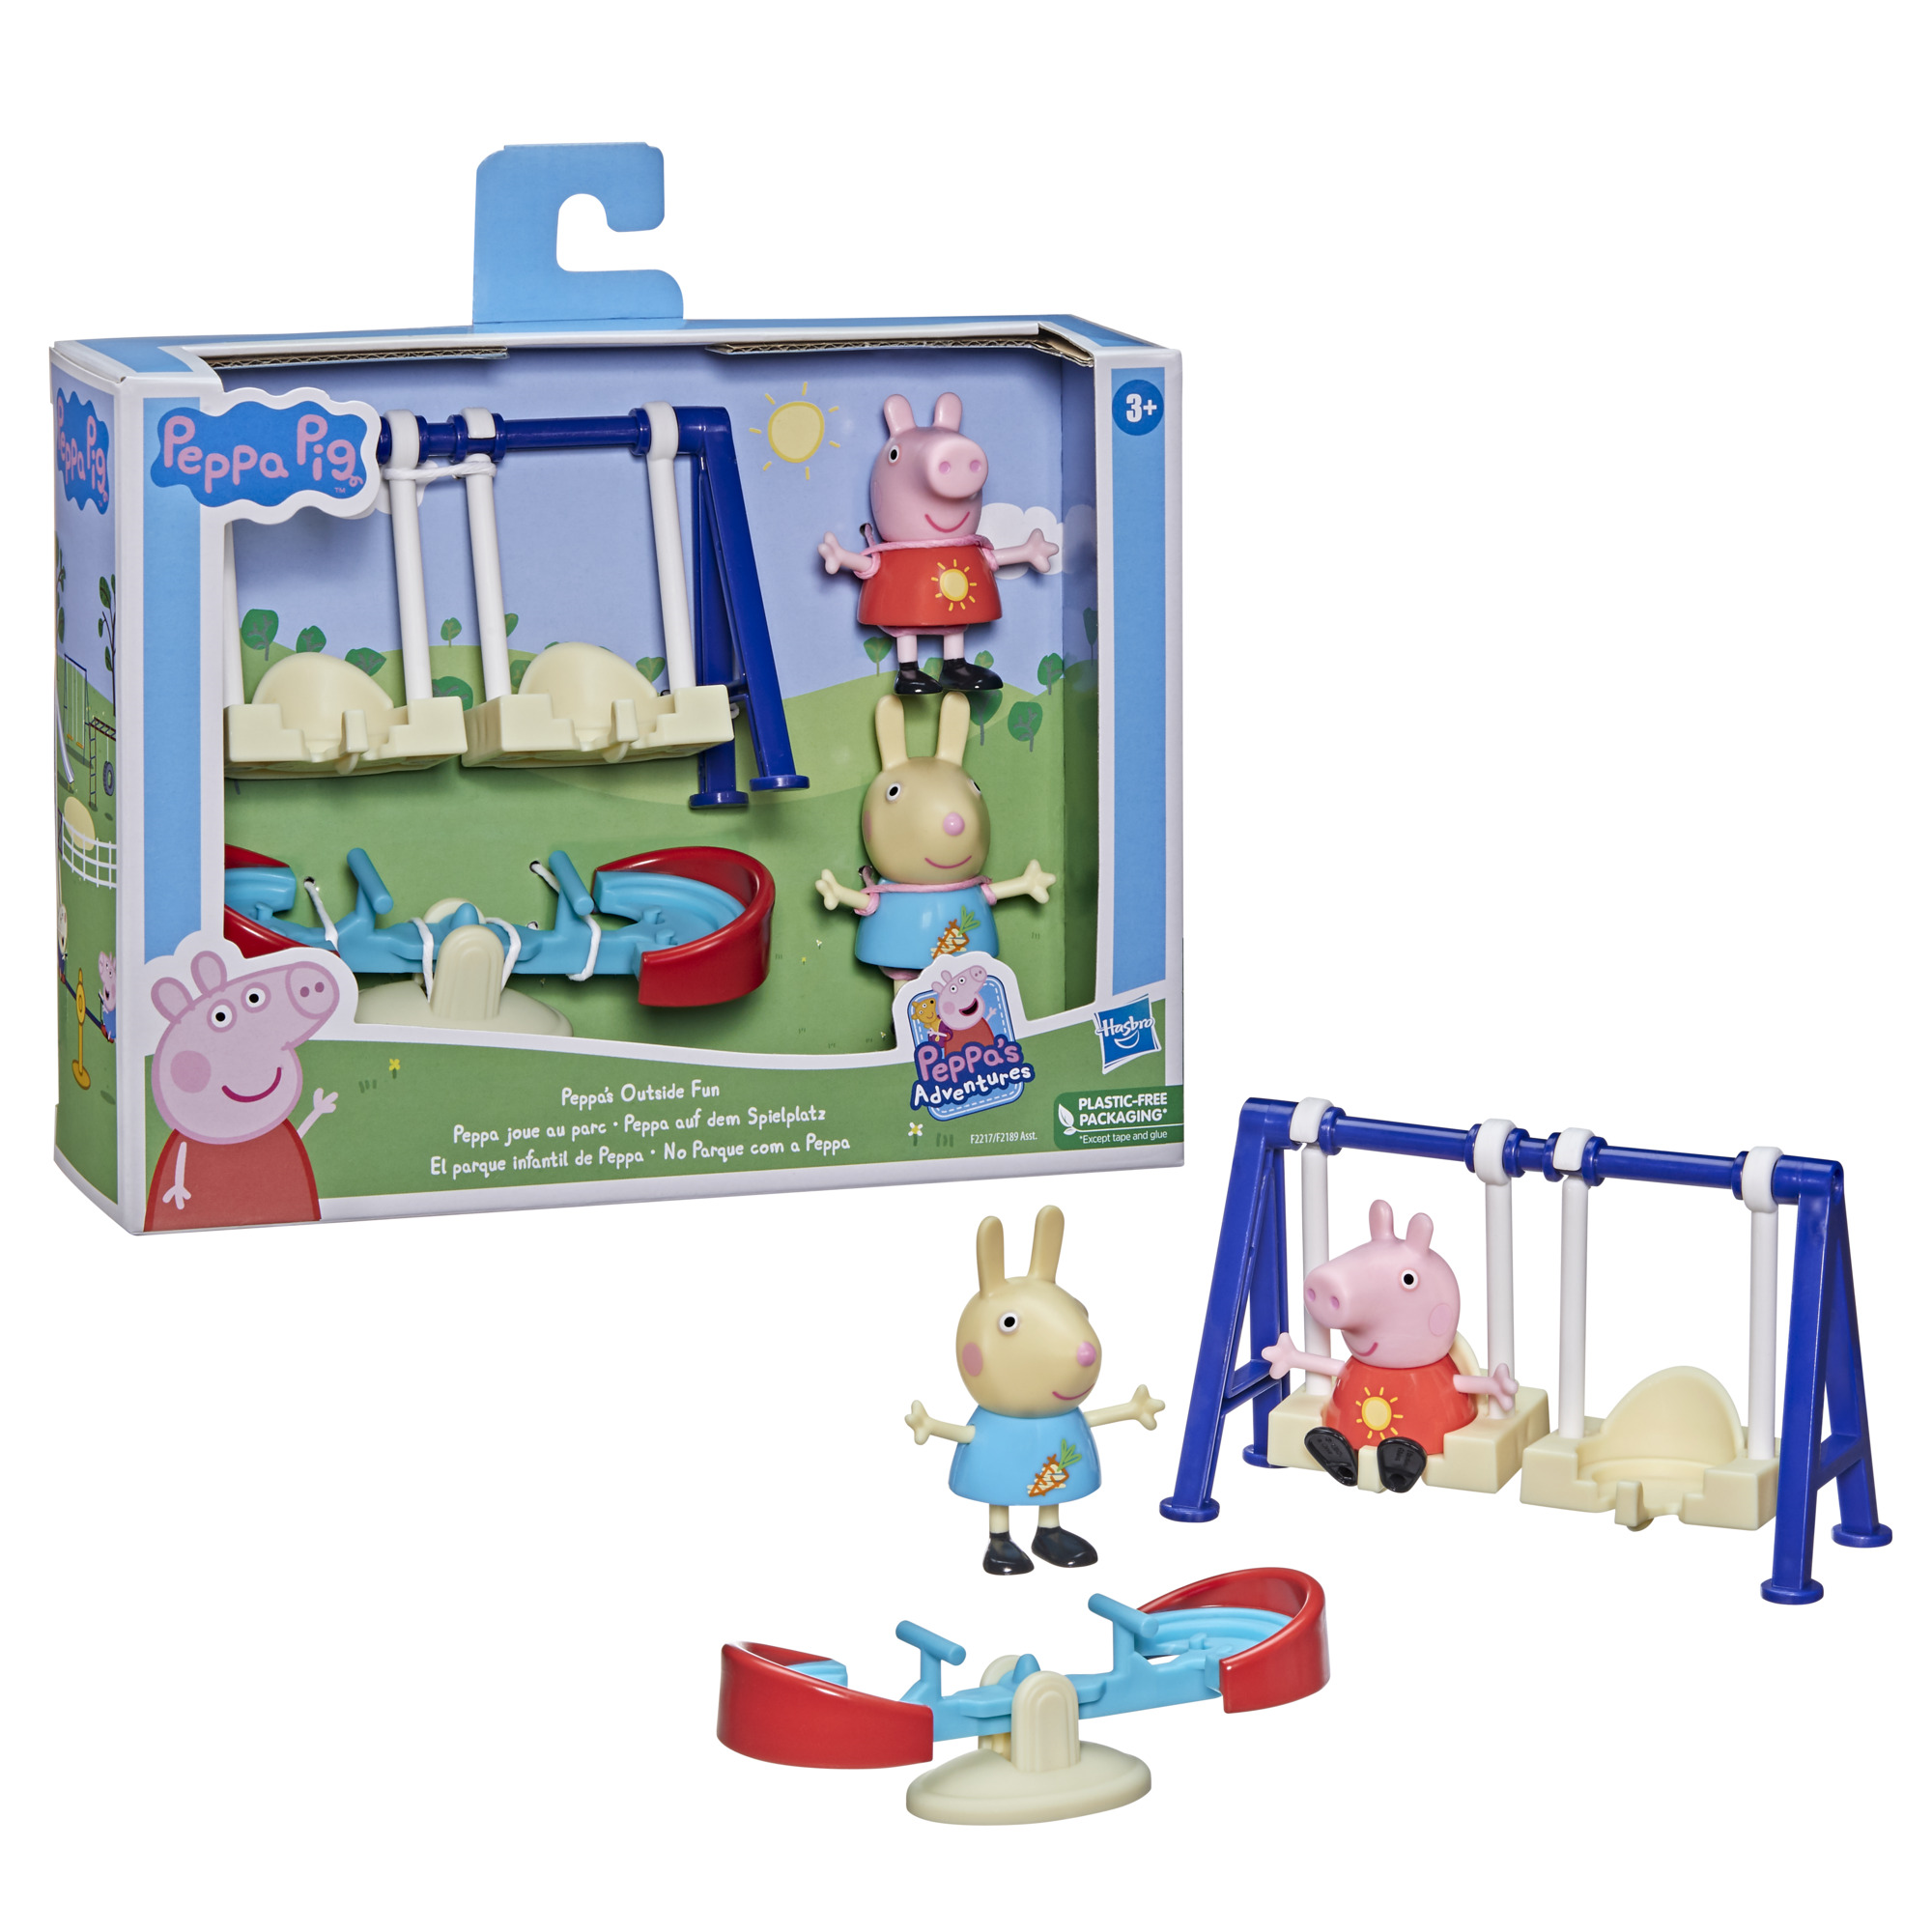 Peppa pig - i playset di peppa pig, giocattolo con 2 personaggi e accessori, per bambini dai 3 anni in su - PEPPA PIG